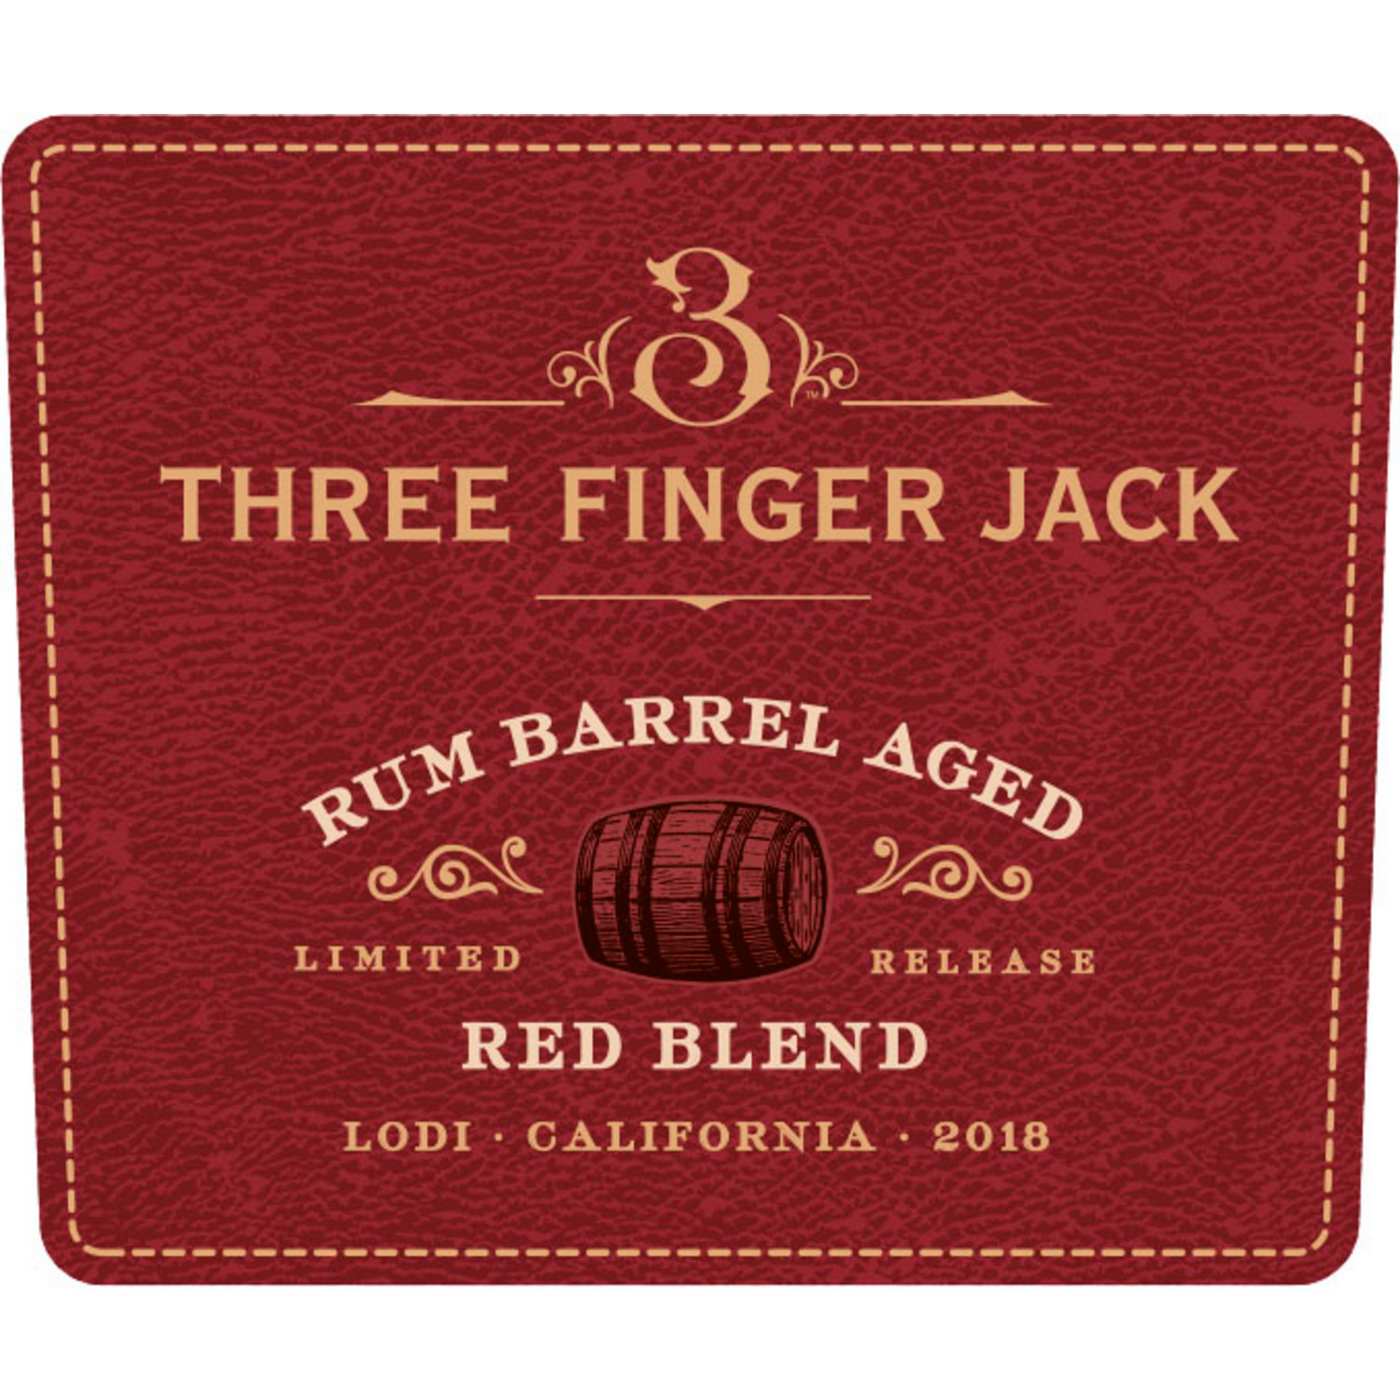 Three Finger Jack Rum Barrel Aged Red Blend; image 6 of 8